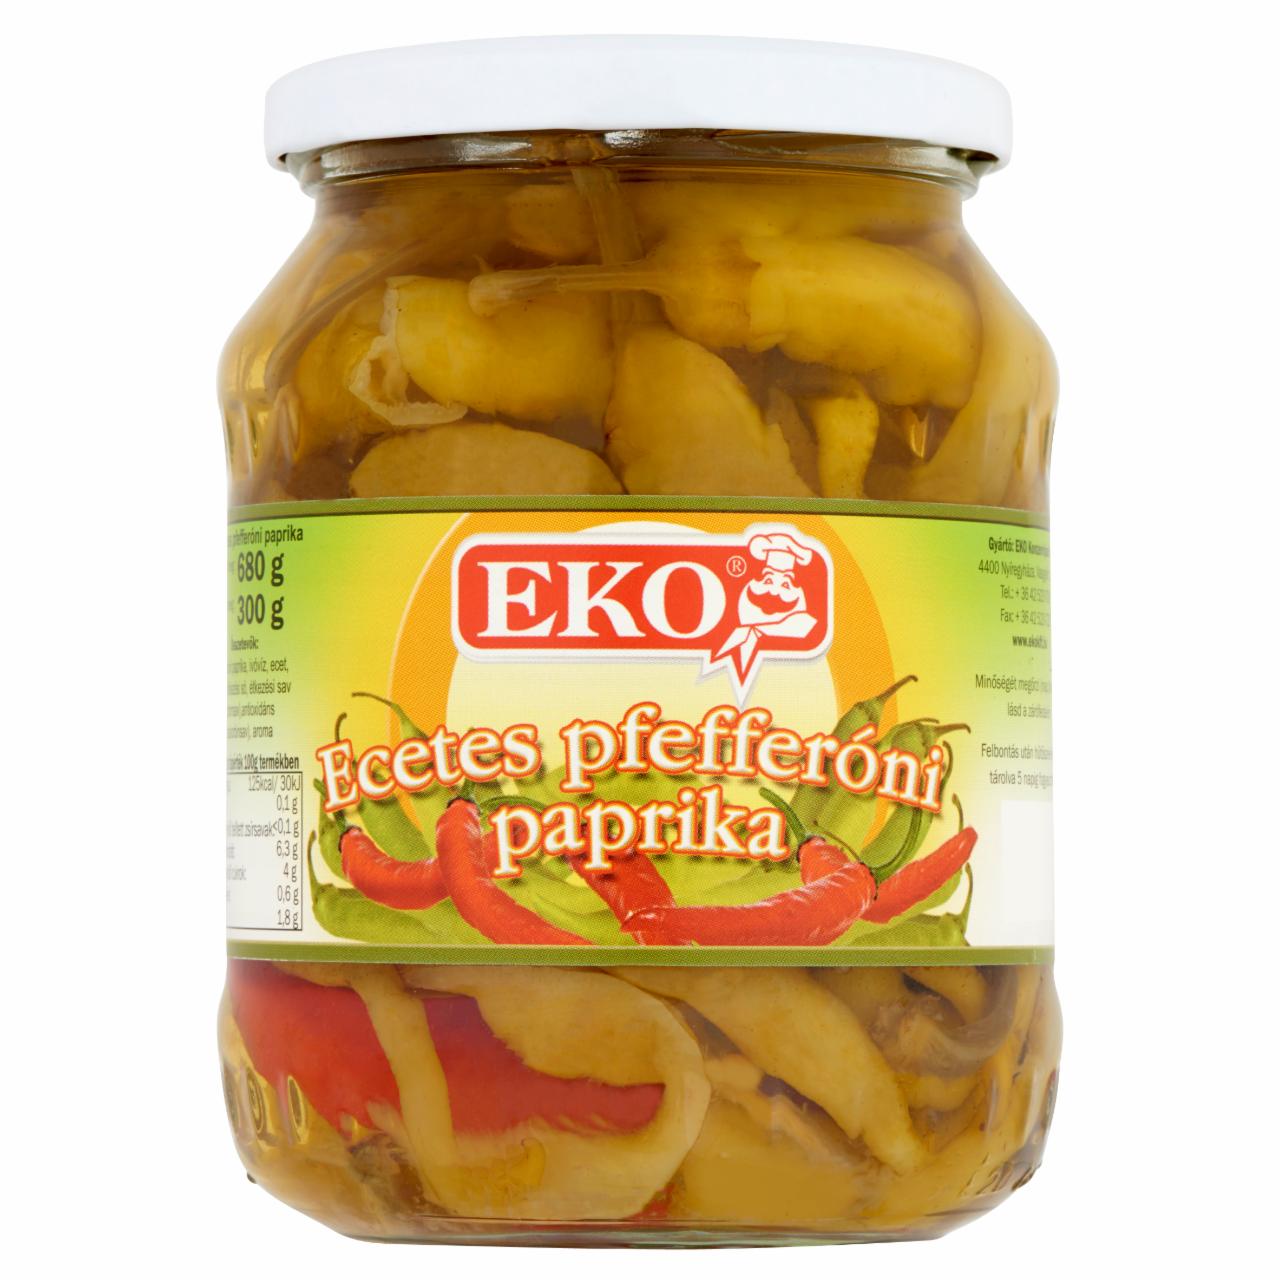 Képek - Eko ecetes pfefferóni paprika 680 g